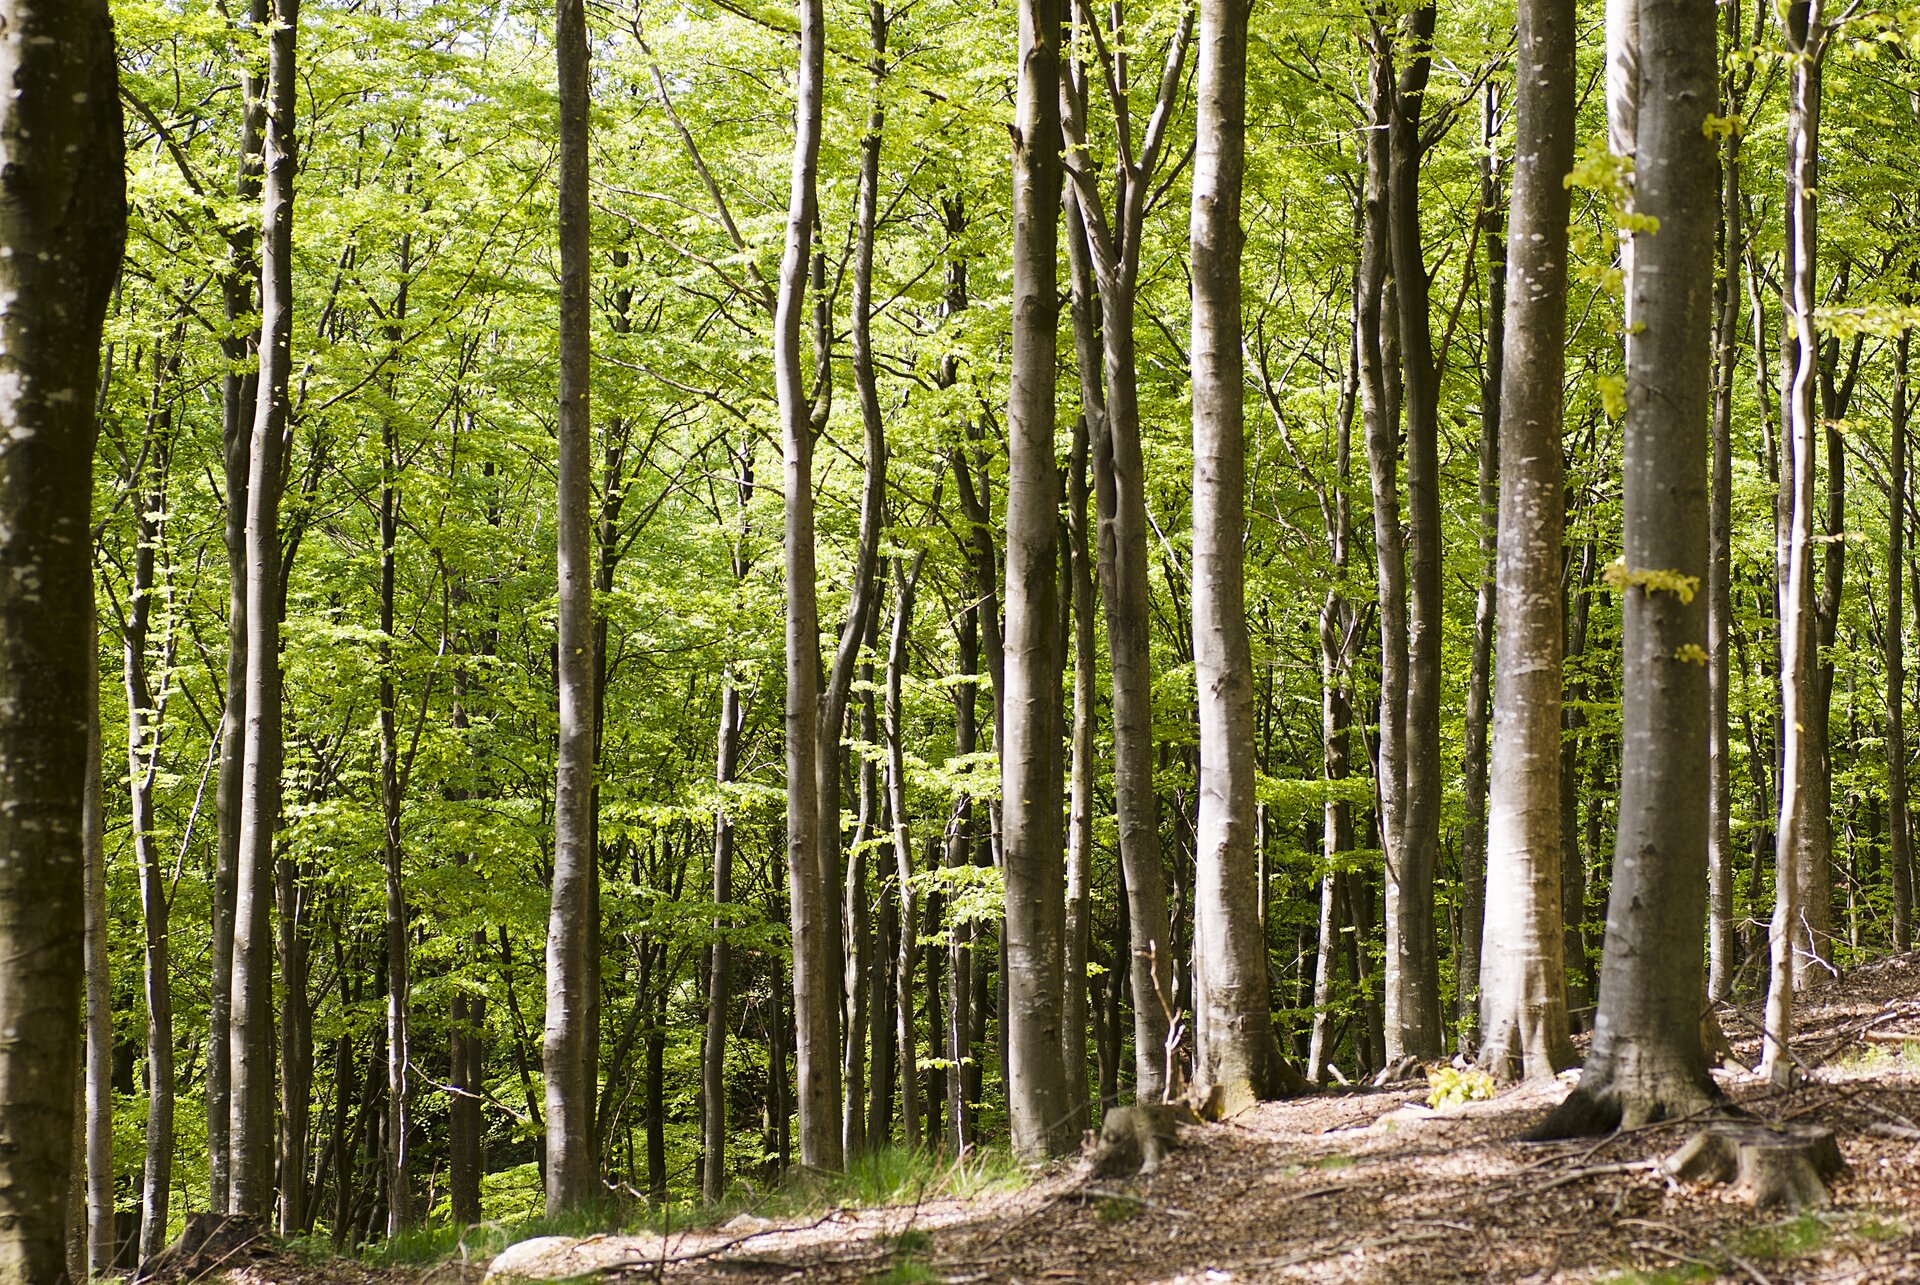 Fotografia przedstawia wnętrze lasu bukowego, czyli buczyny. Las jest gęsty, pnie drzew cienkie, pokryte jasną korą. Przez zielone liście prześwieca słońce.